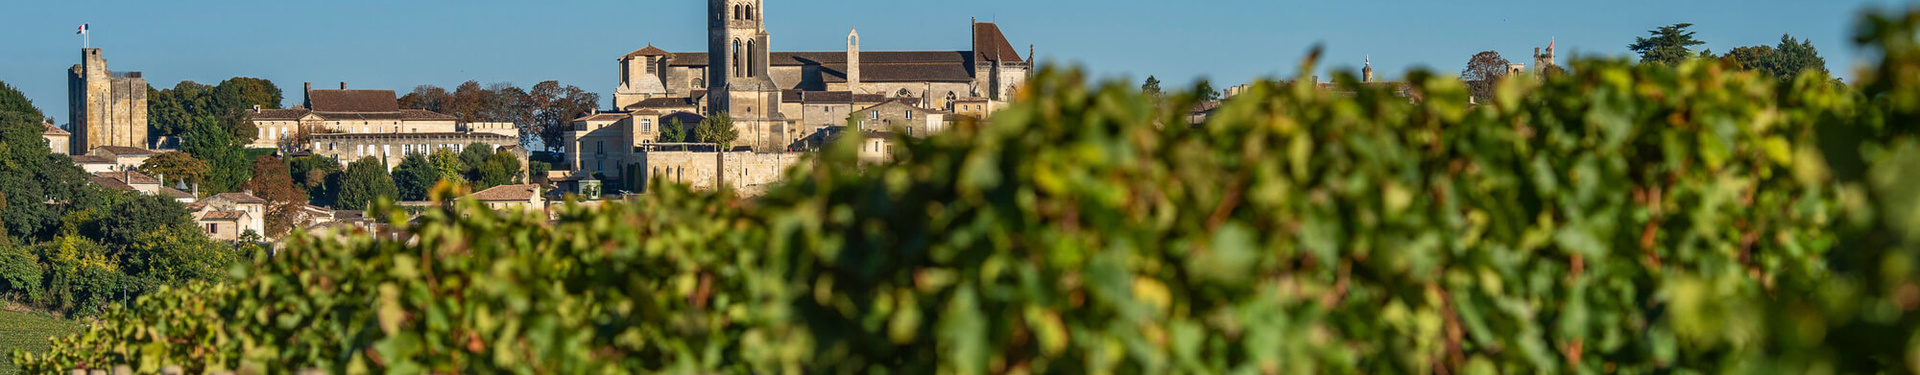 Formulaire de demande de devis - La route des grands vins de Bordeaux à vélo | Nature Occitane